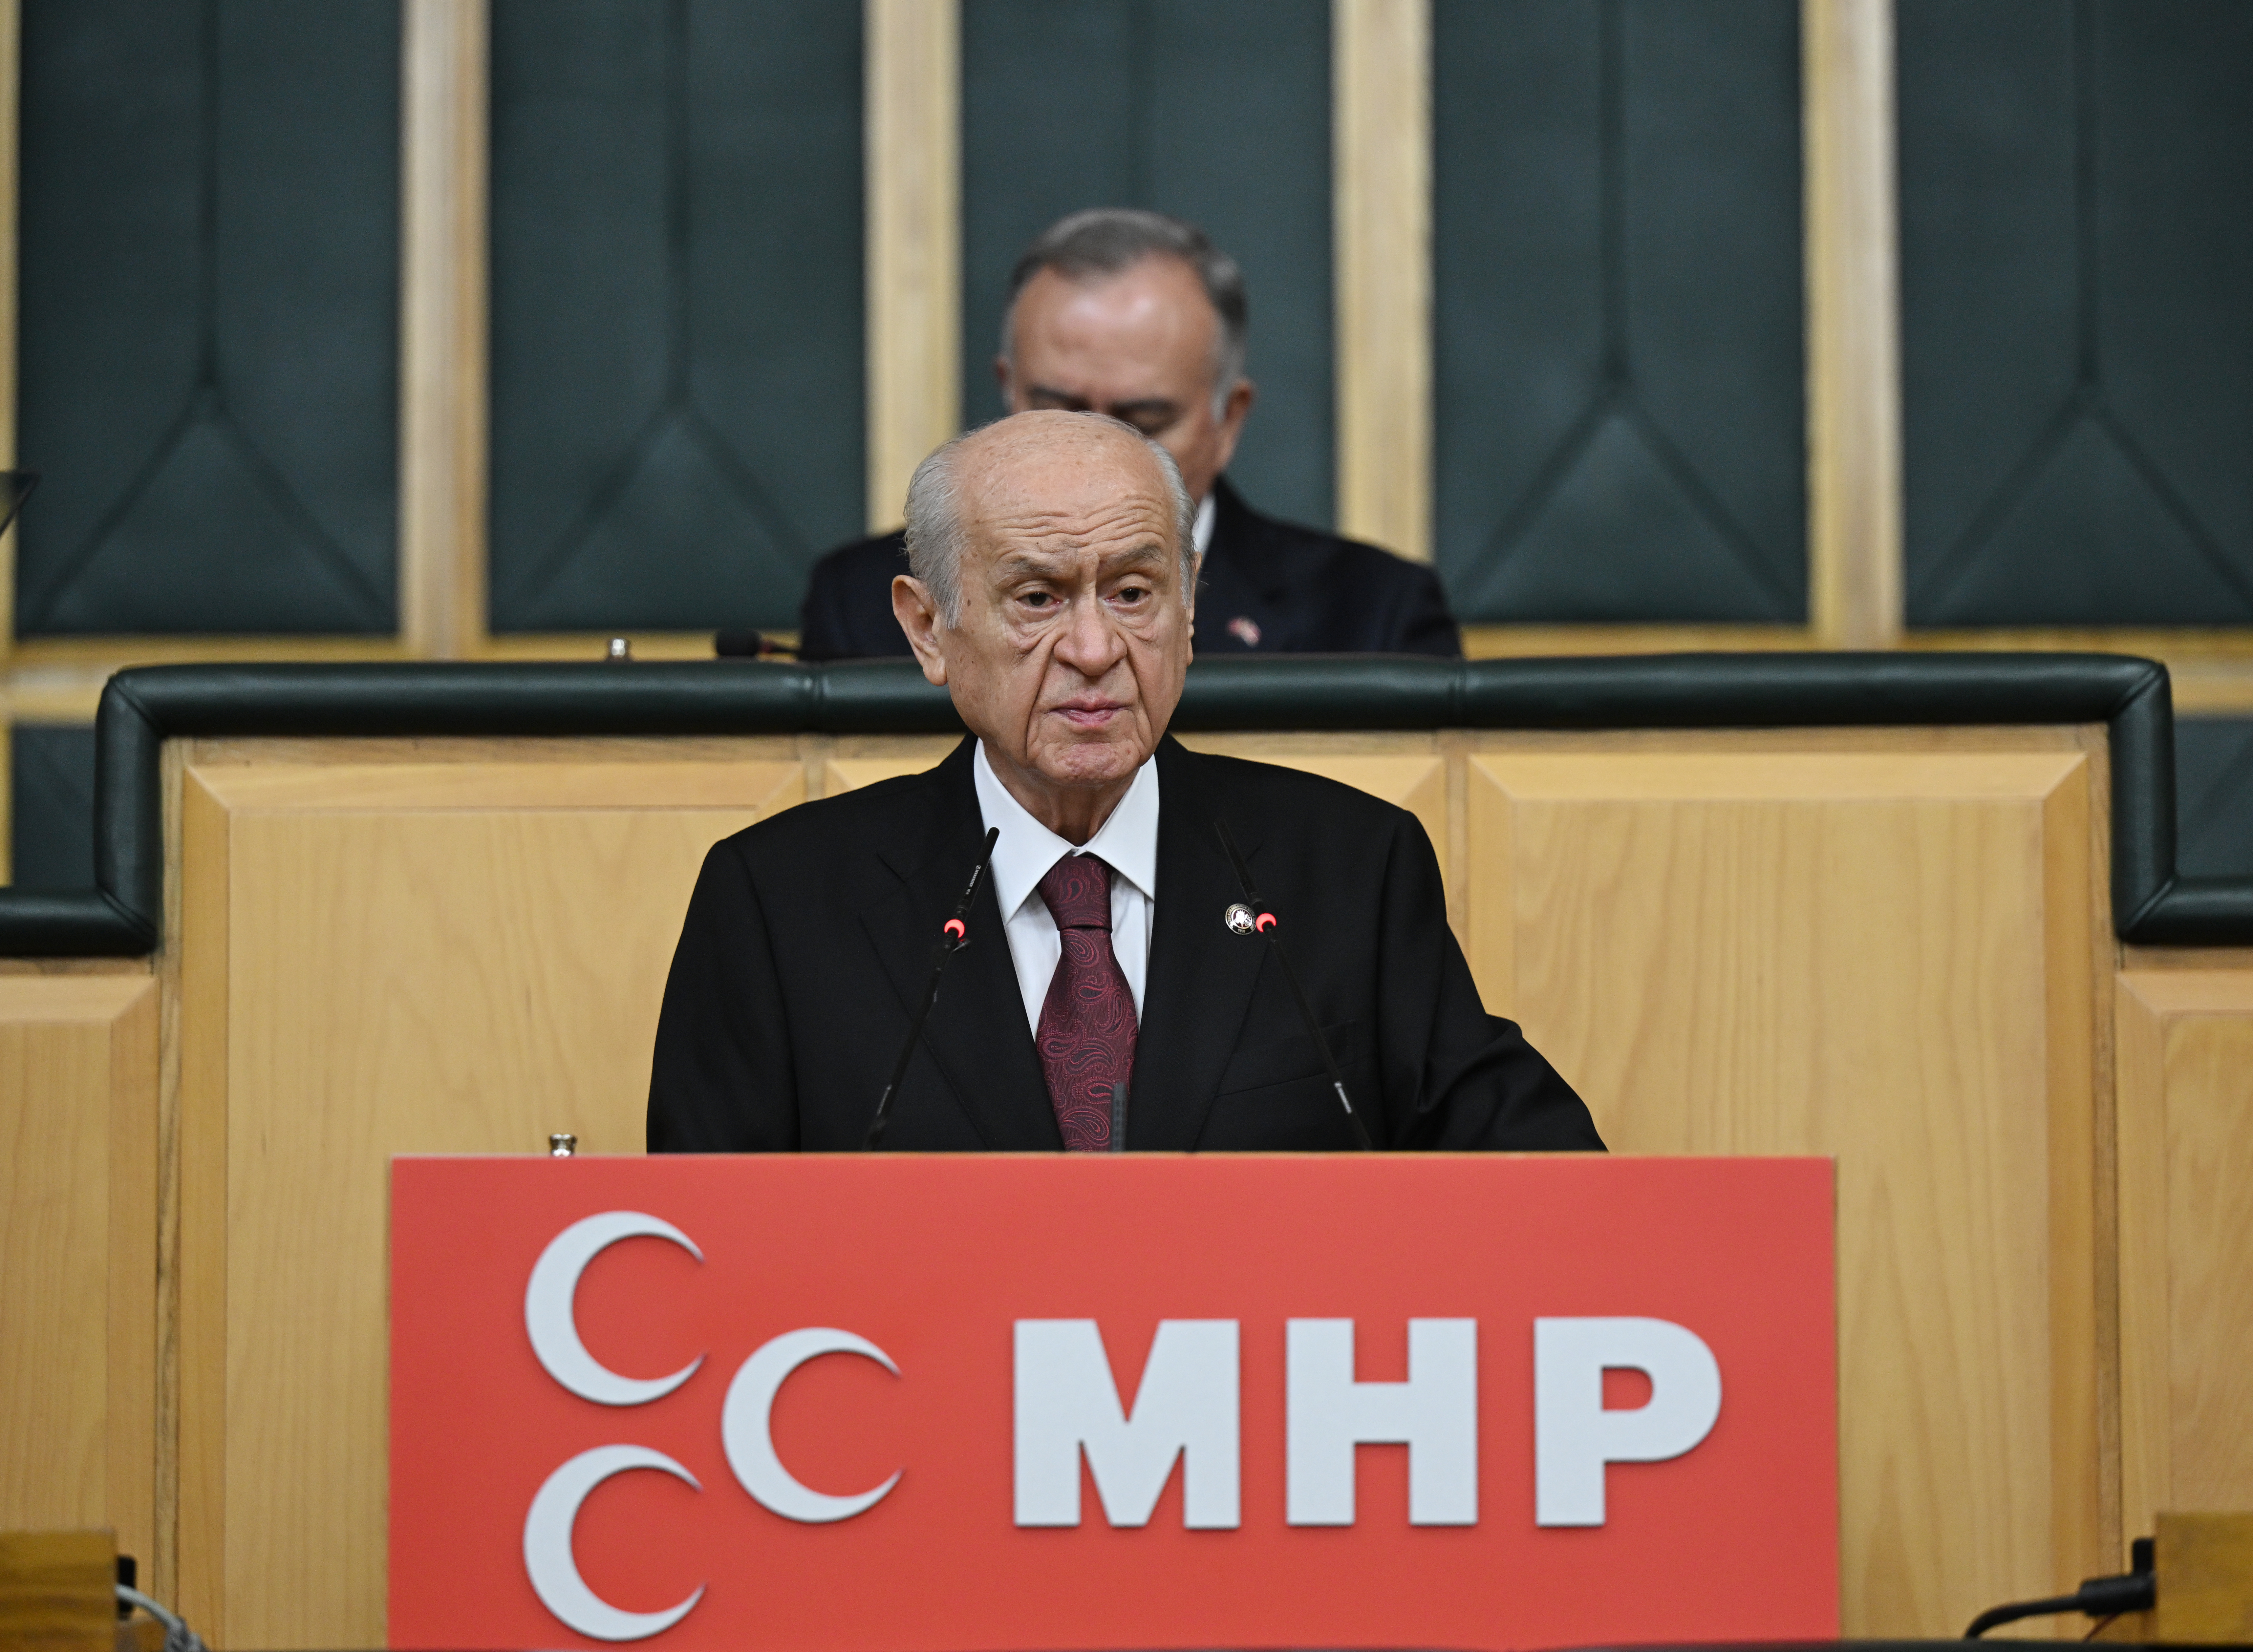 MHP Lideri Bahçeli meydan okudu! CHP’sinden İP’ine kadar malum partiler neyi biliyorsa acilen mahkemeye yetiştirmelidir